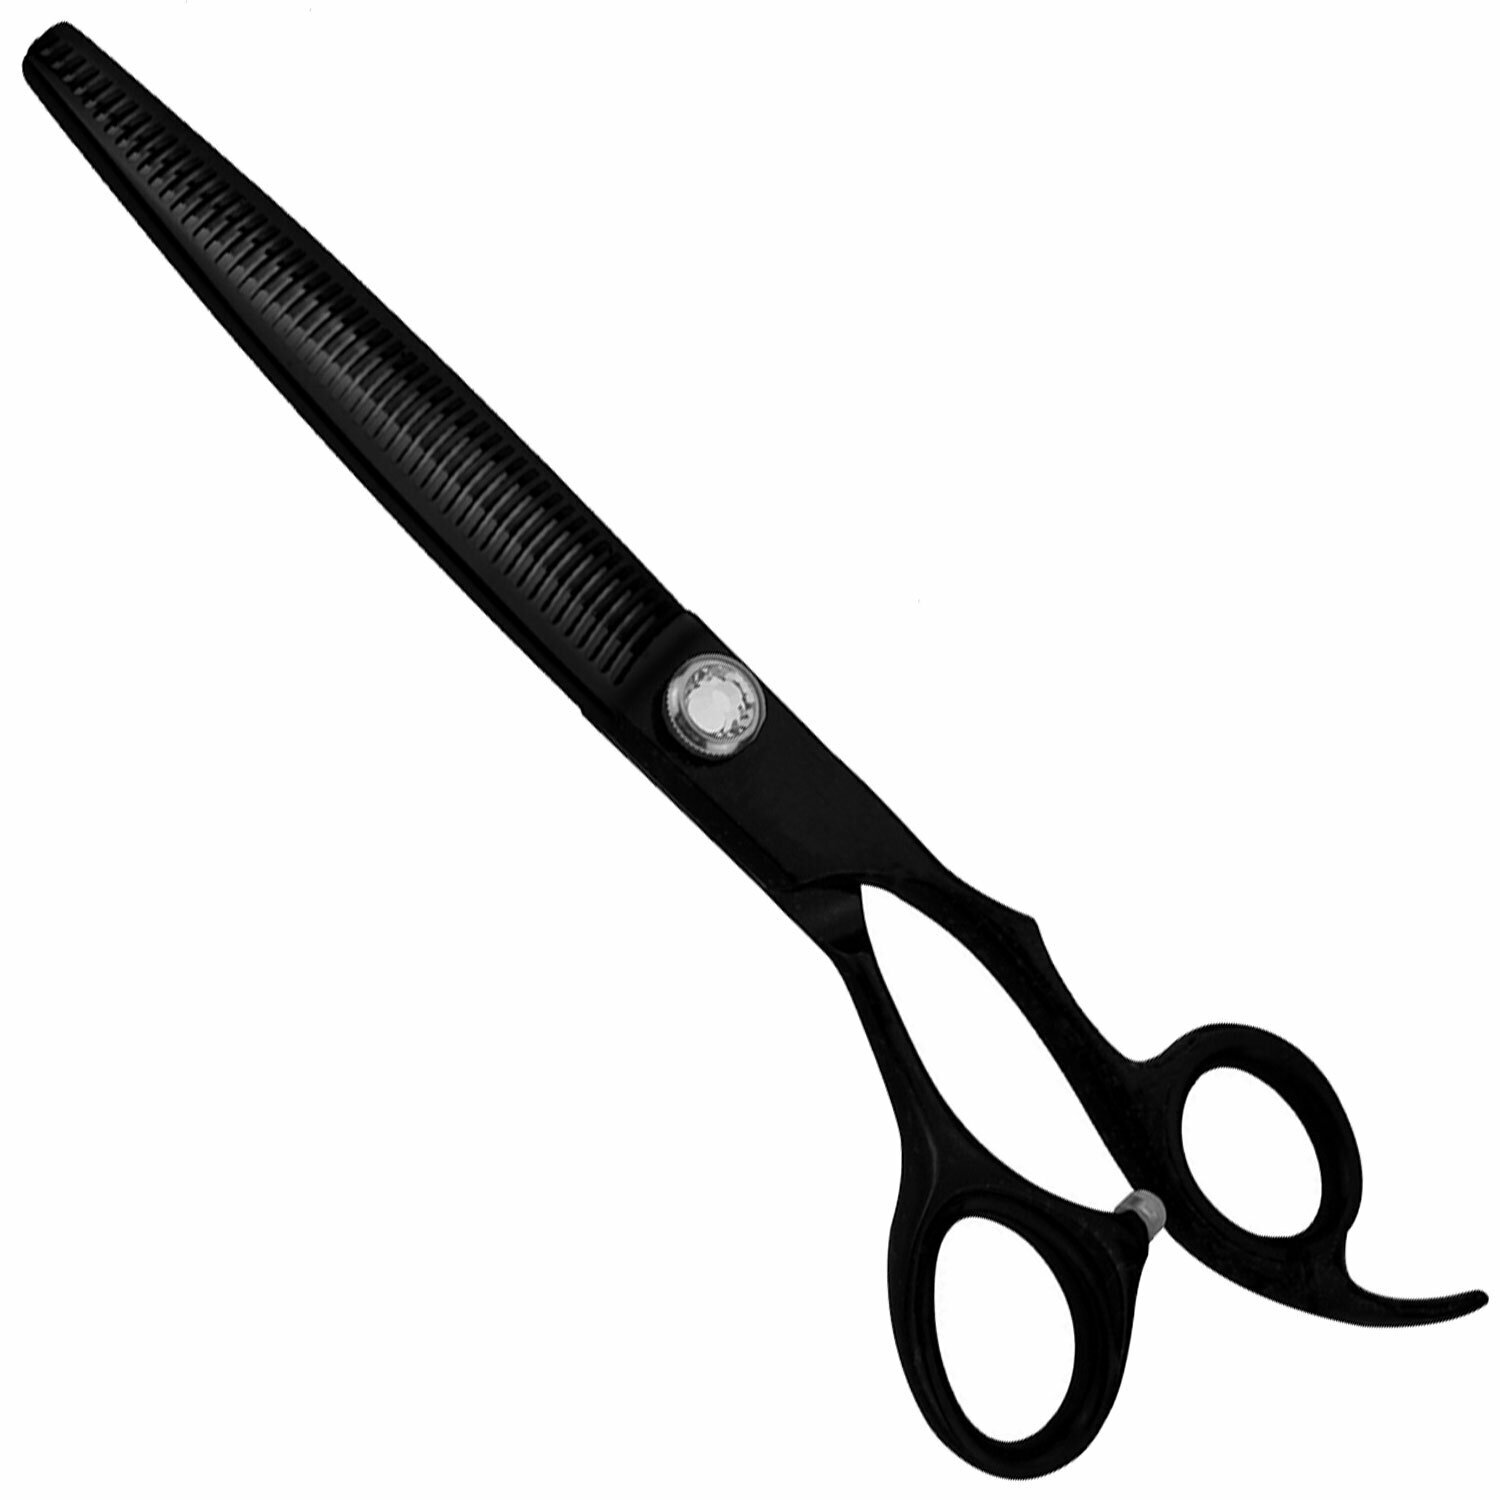 Japanese steel modeling scissors 19 cm